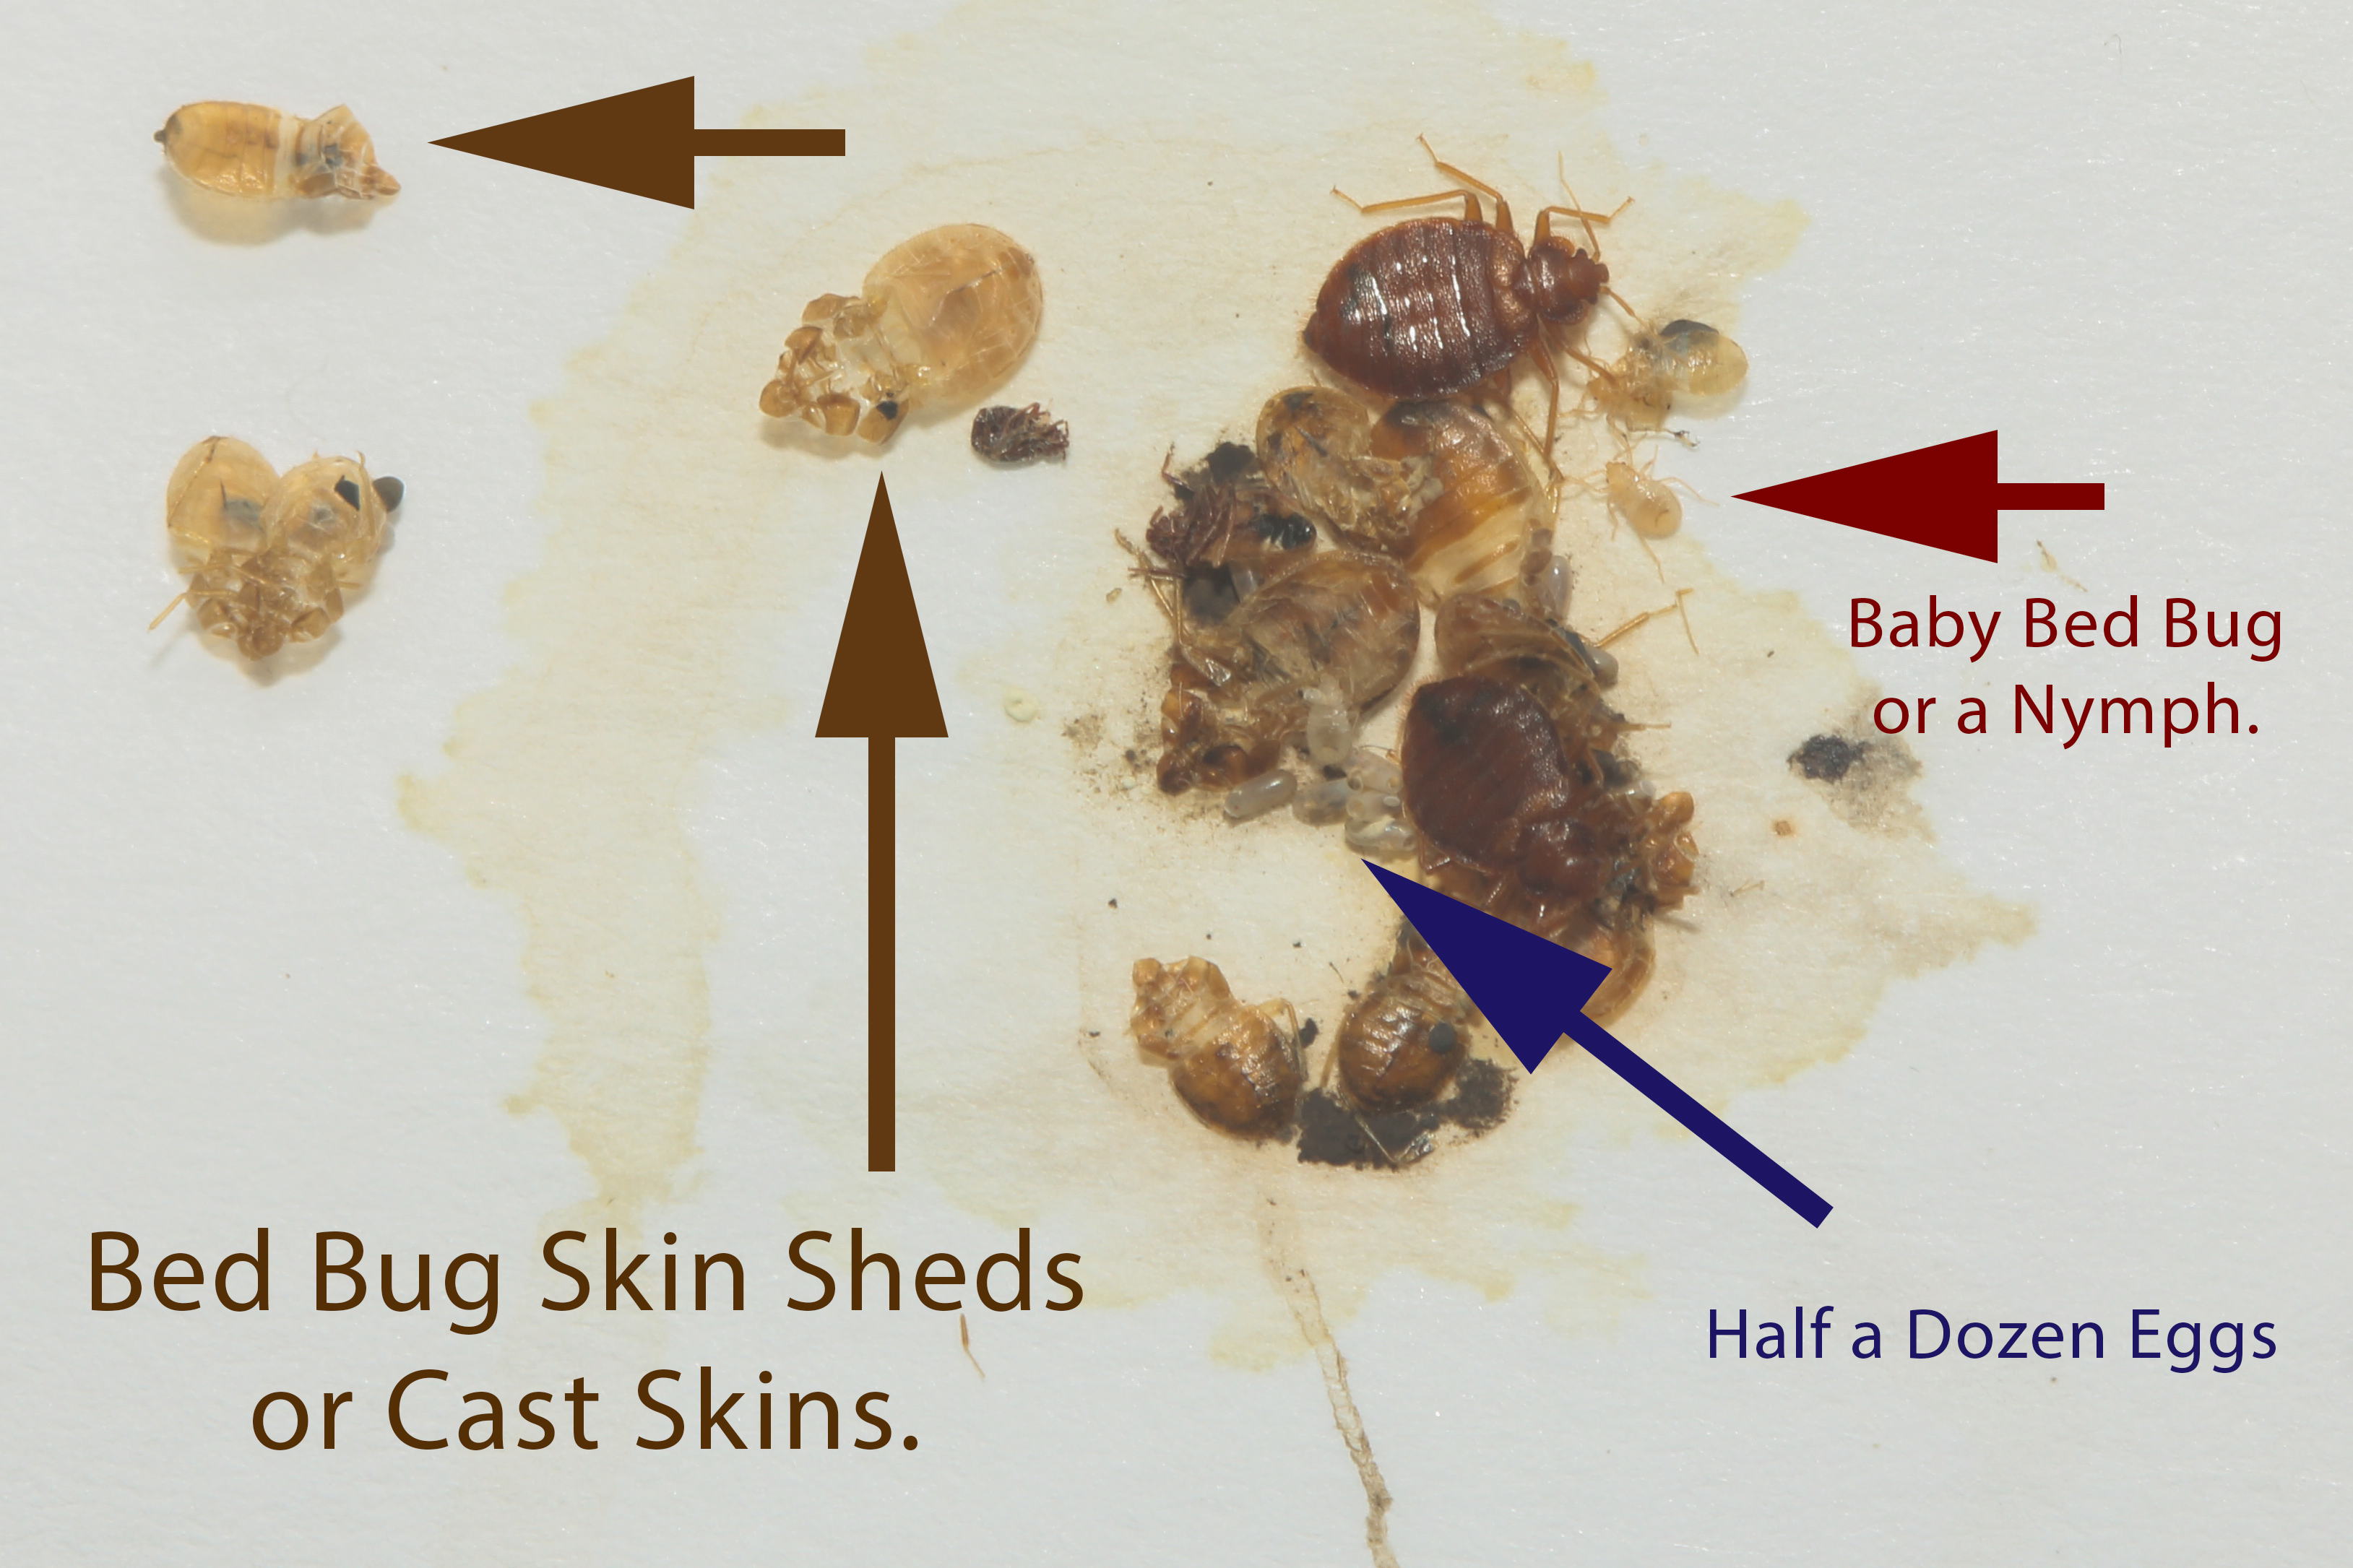 BedBug skin cast or shed skin